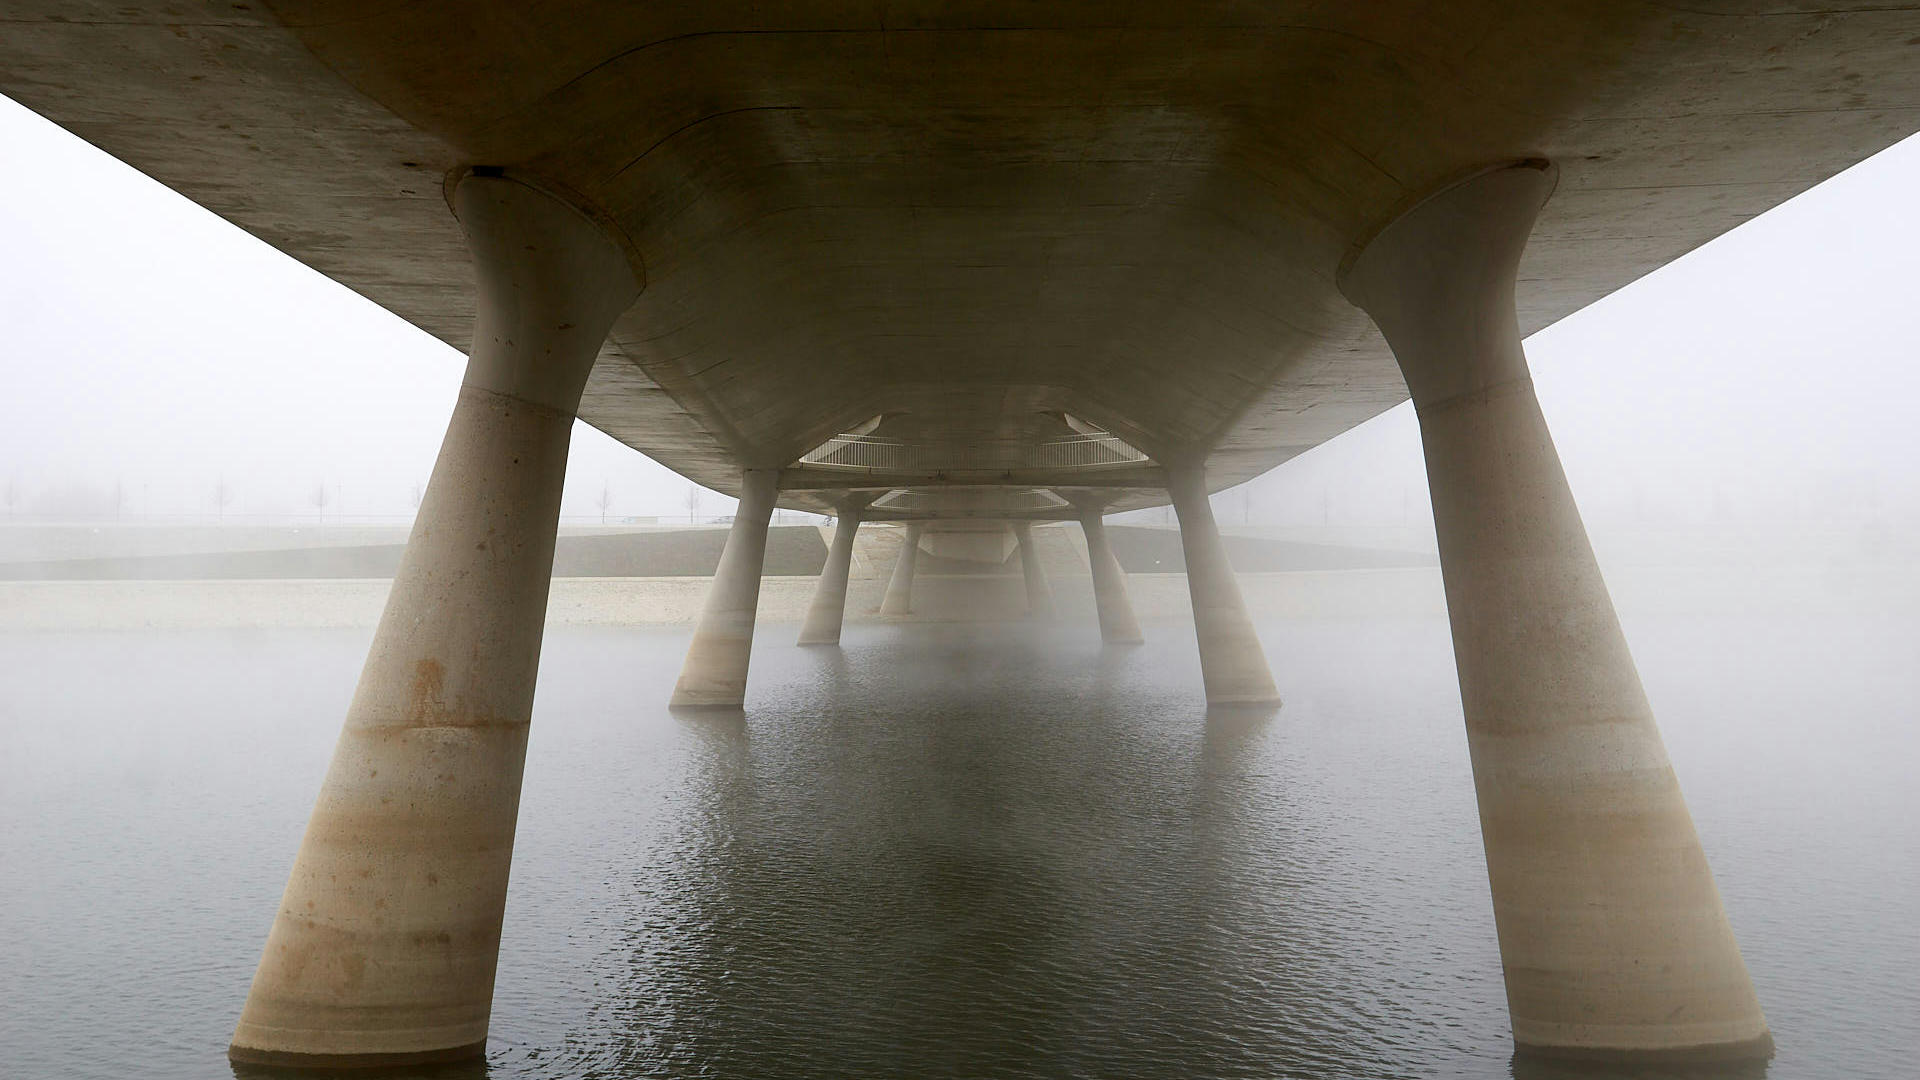 Bridge near Nijmegen, photo by Bernard.